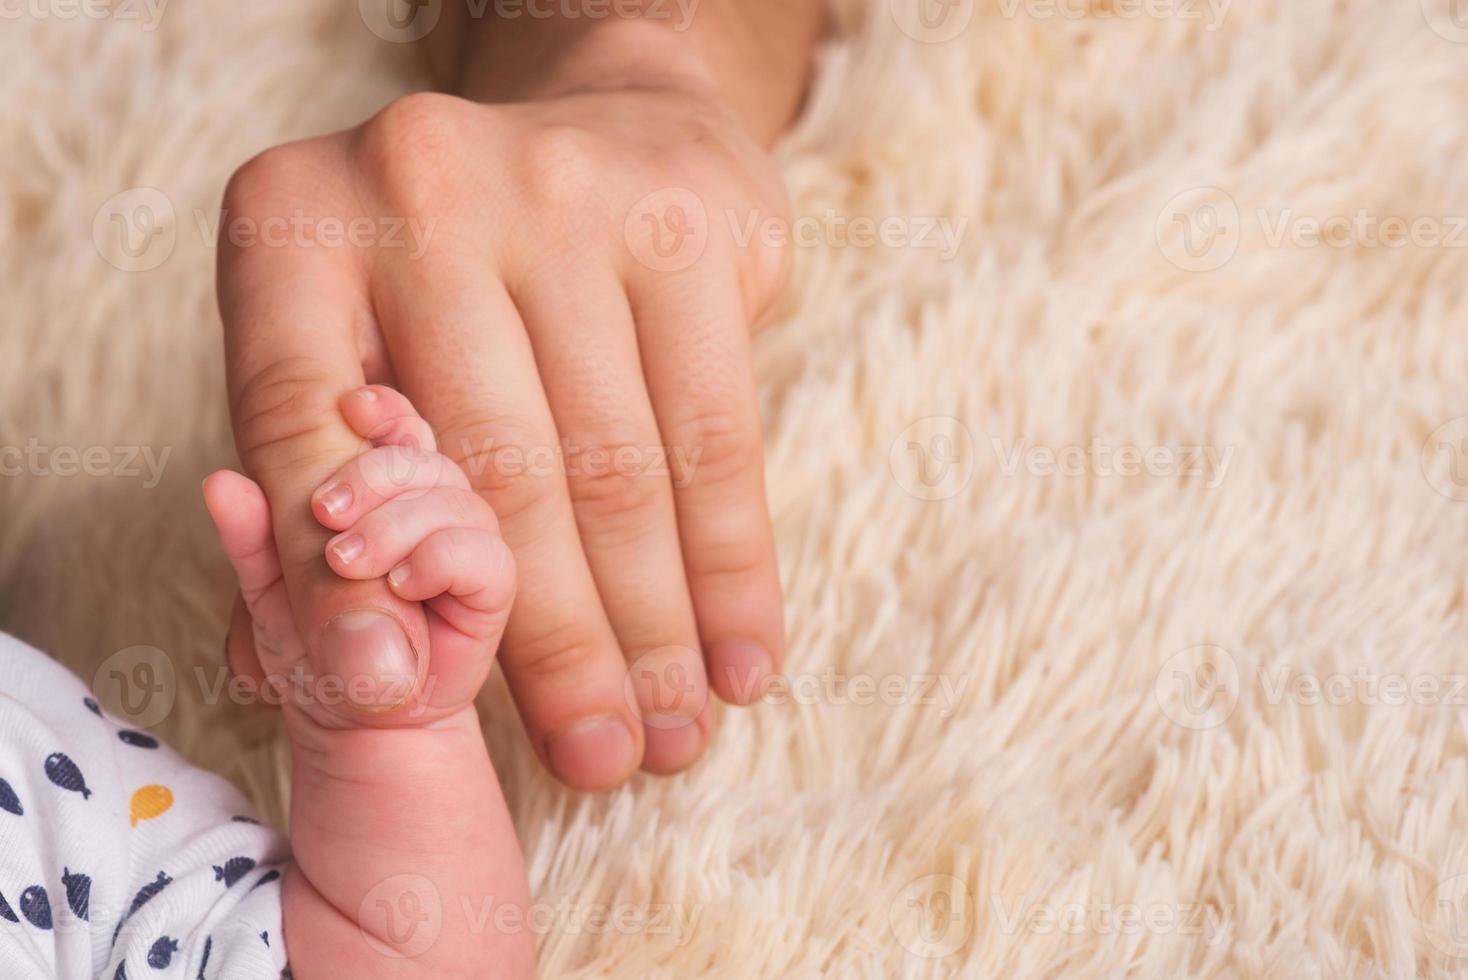 pappa håller en liten babyhand i sina händer. liten hand av ett nyfött barn i stora händer av pappa. bebis håller pappas finger foto